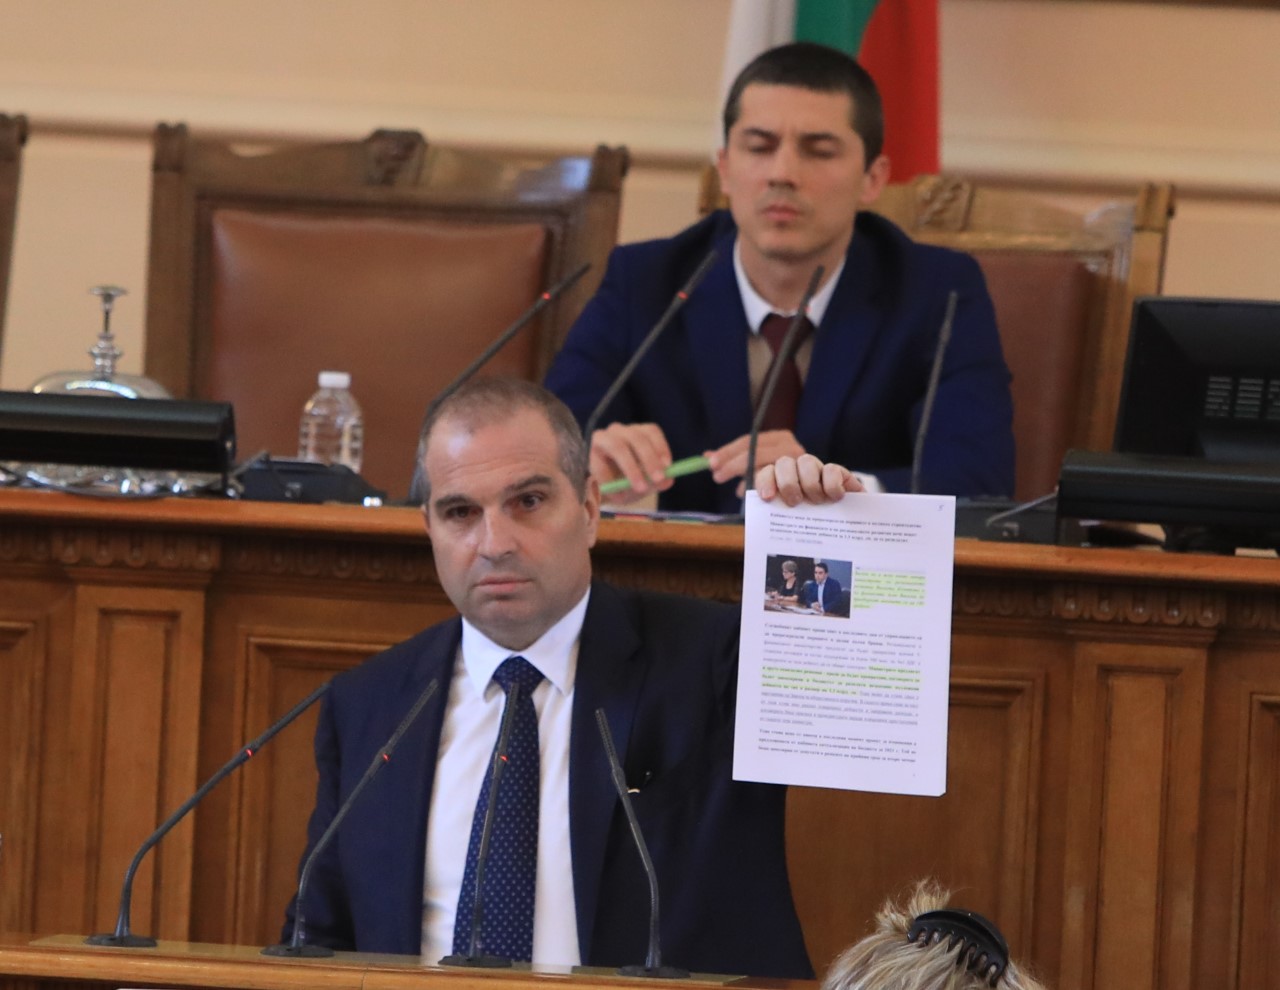 Извънредно заседание на парламента, депутатите обсъждат вота на недоверие към правителството с министър-председател Кирил Петков